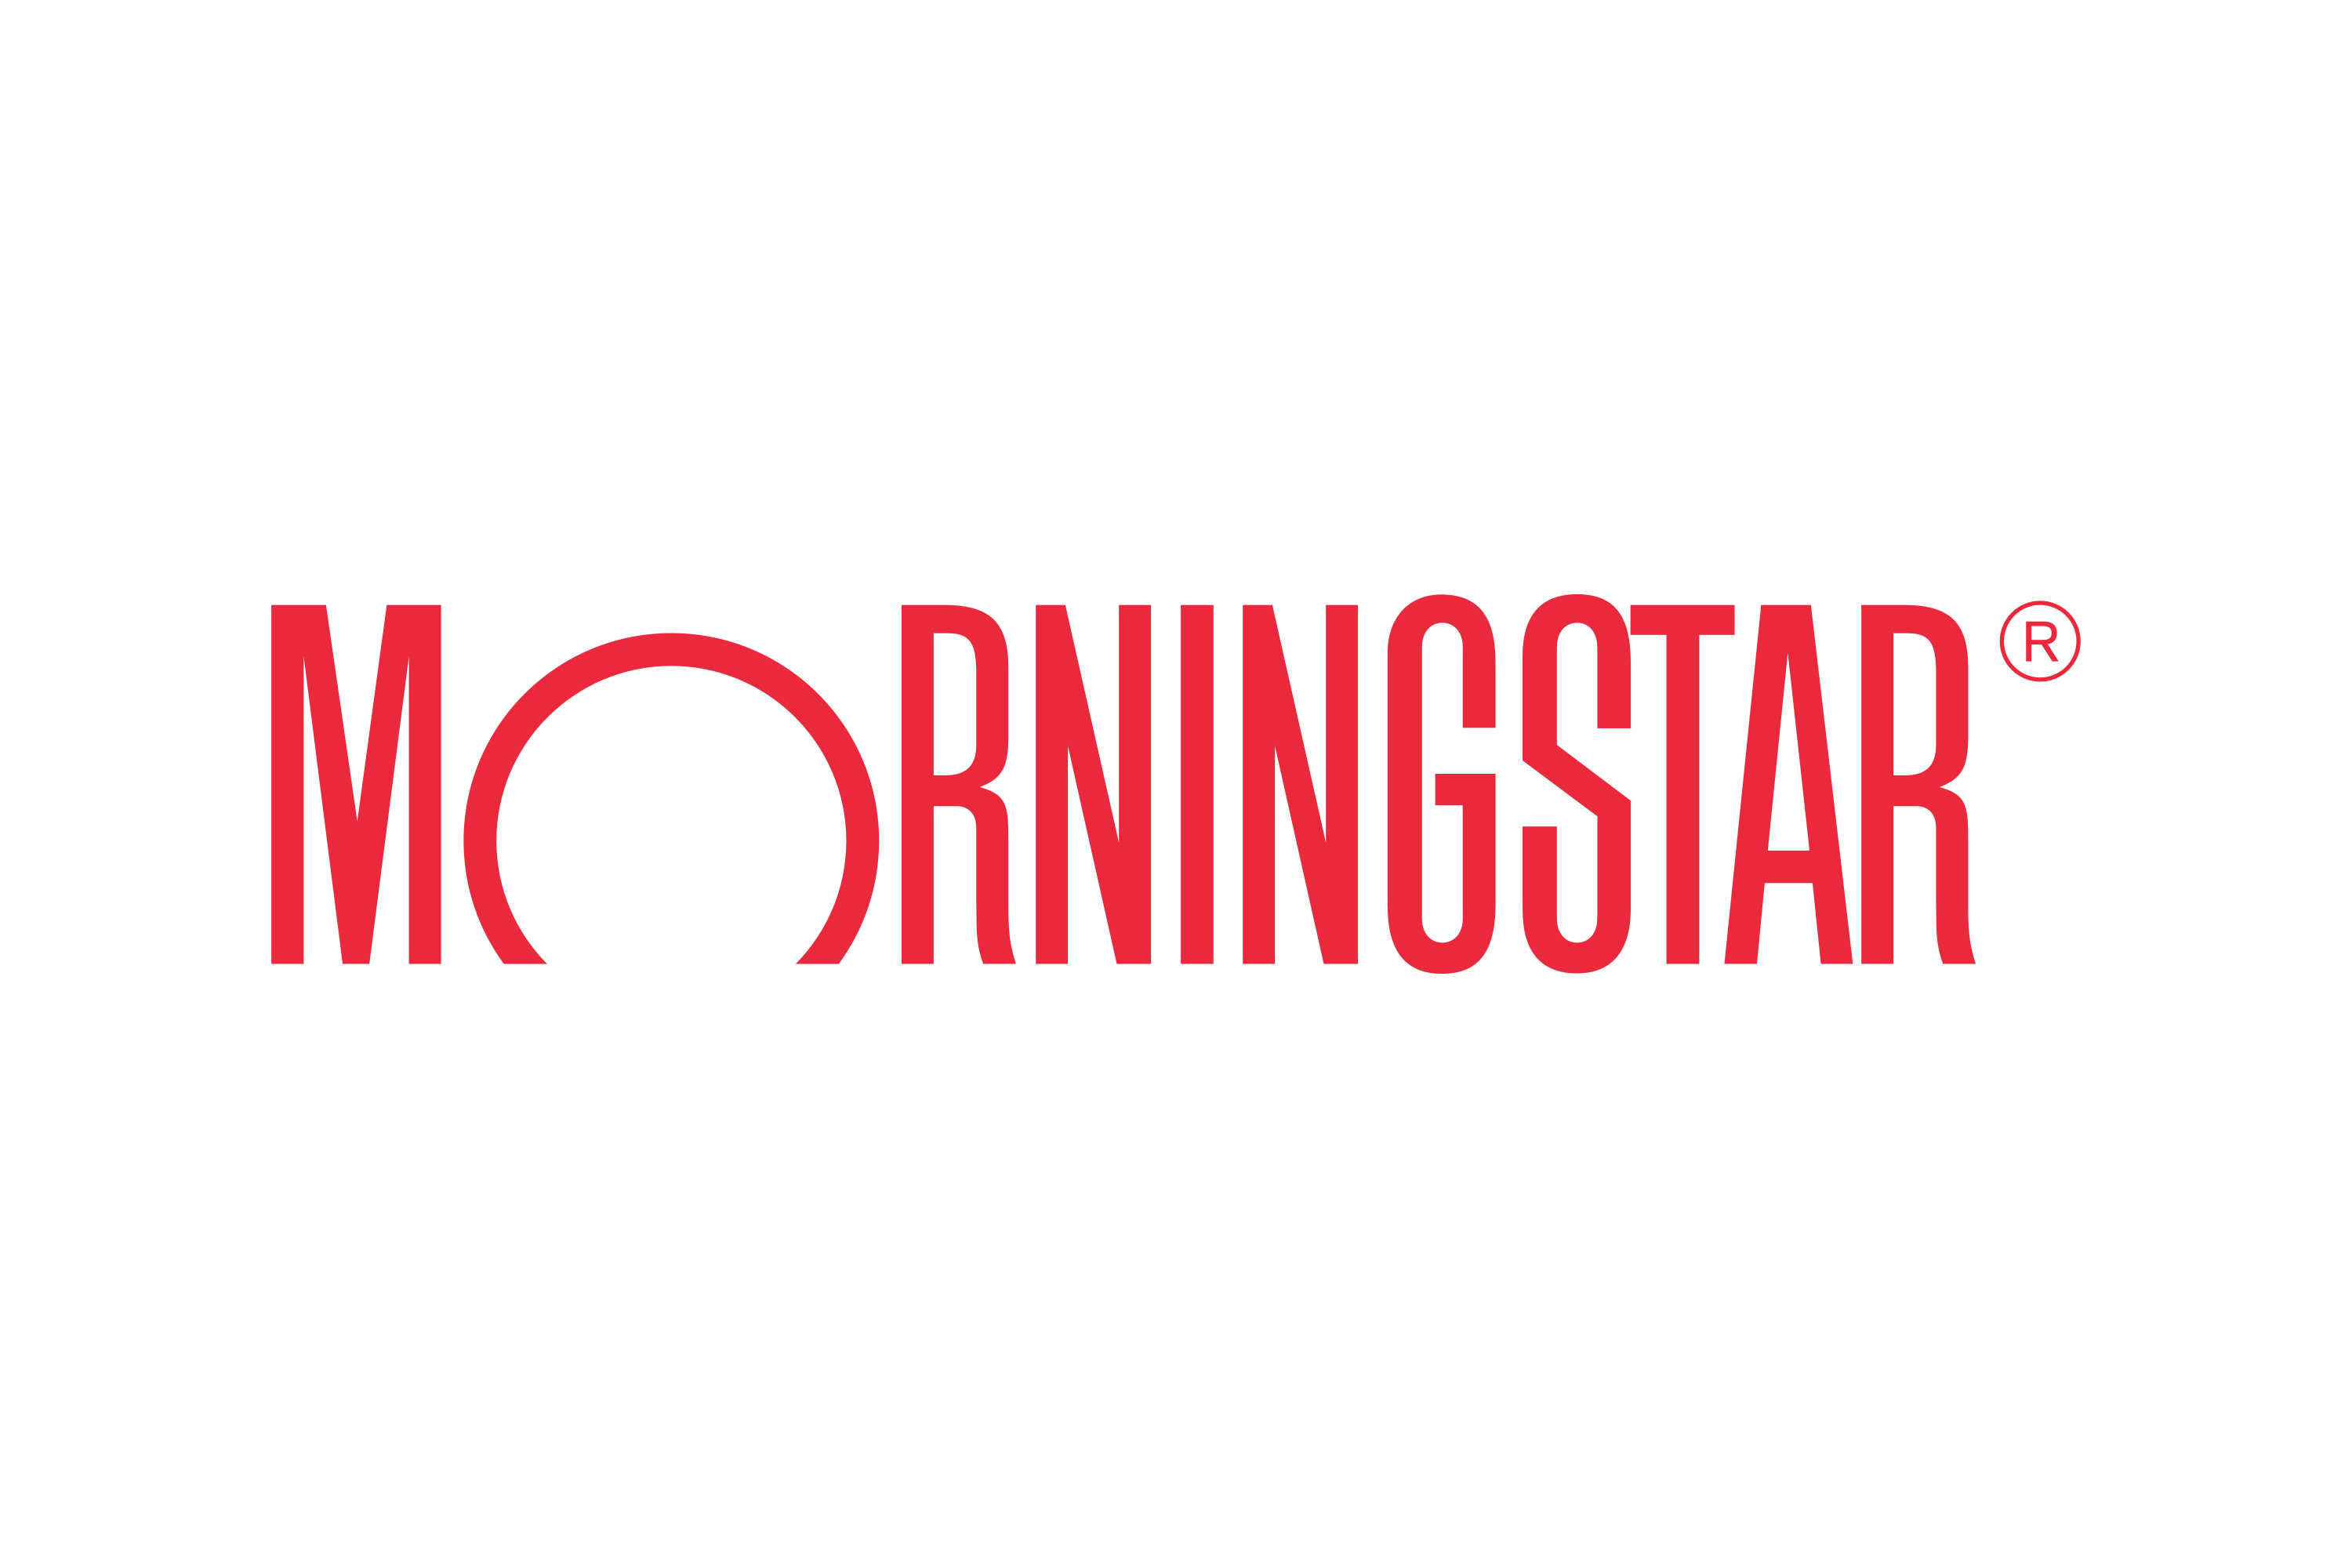 Morningstar,Inc